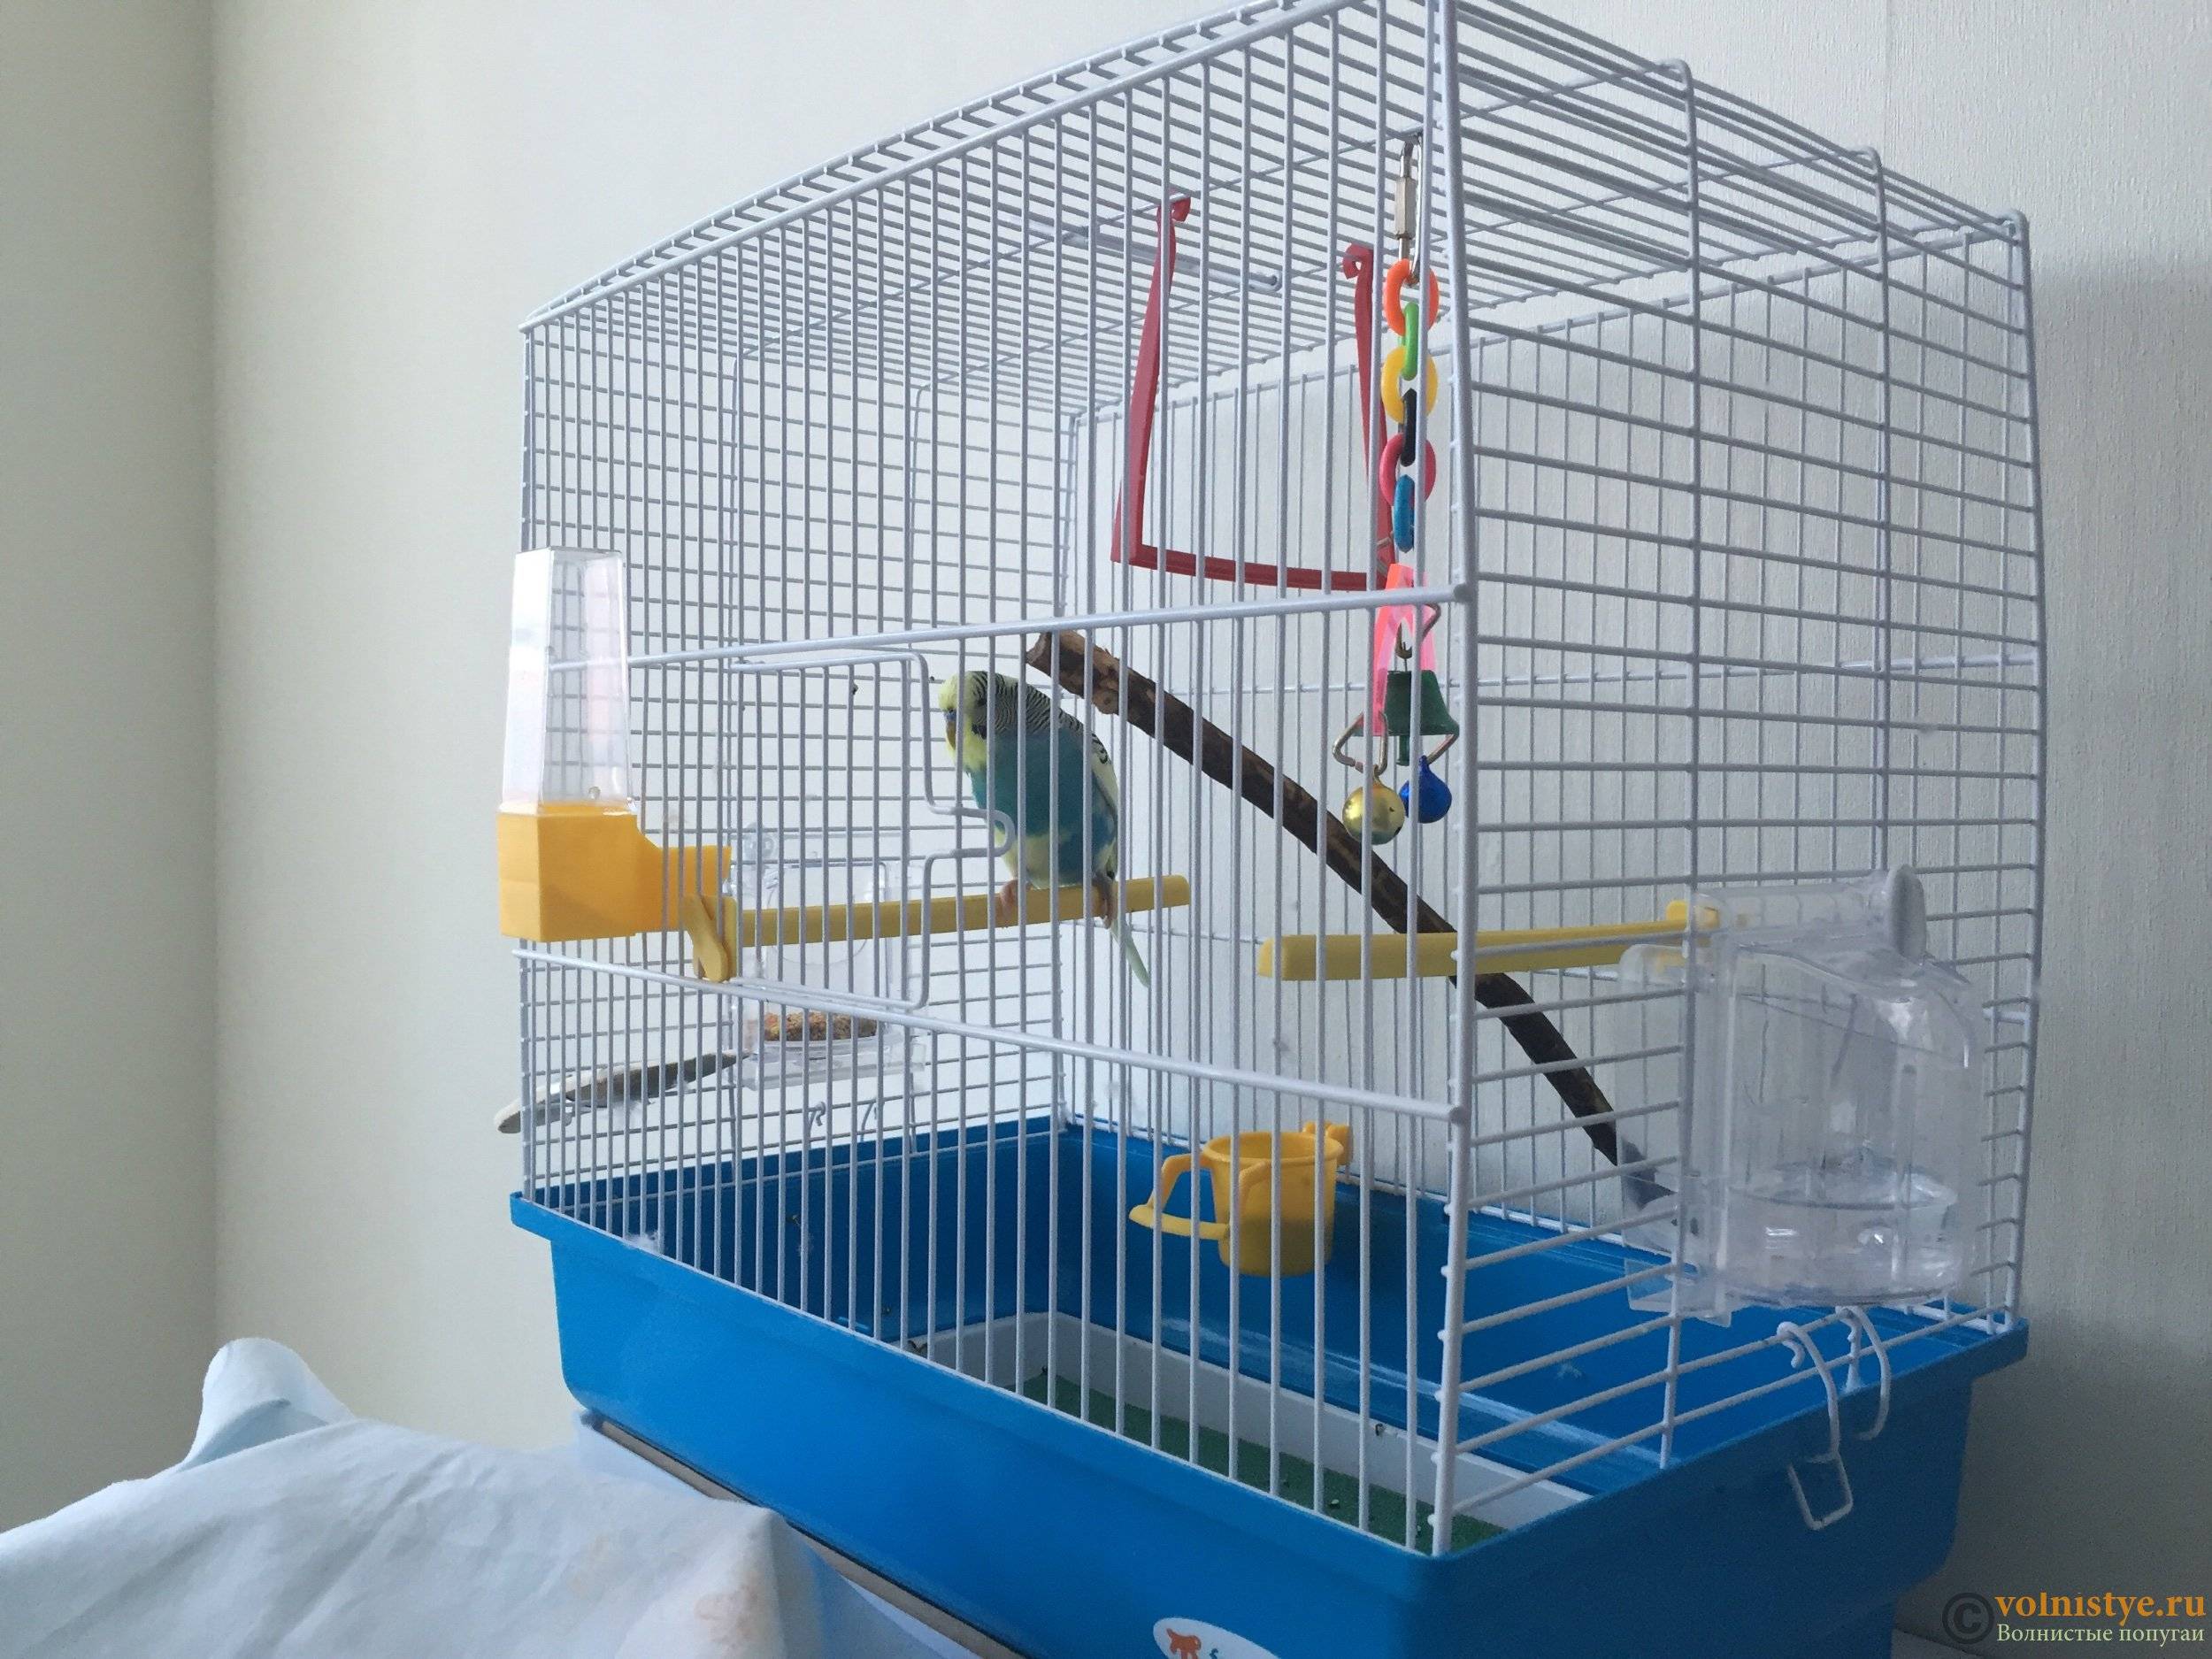 Попугаи-неразлучники: уход и содержание в домашних условиях